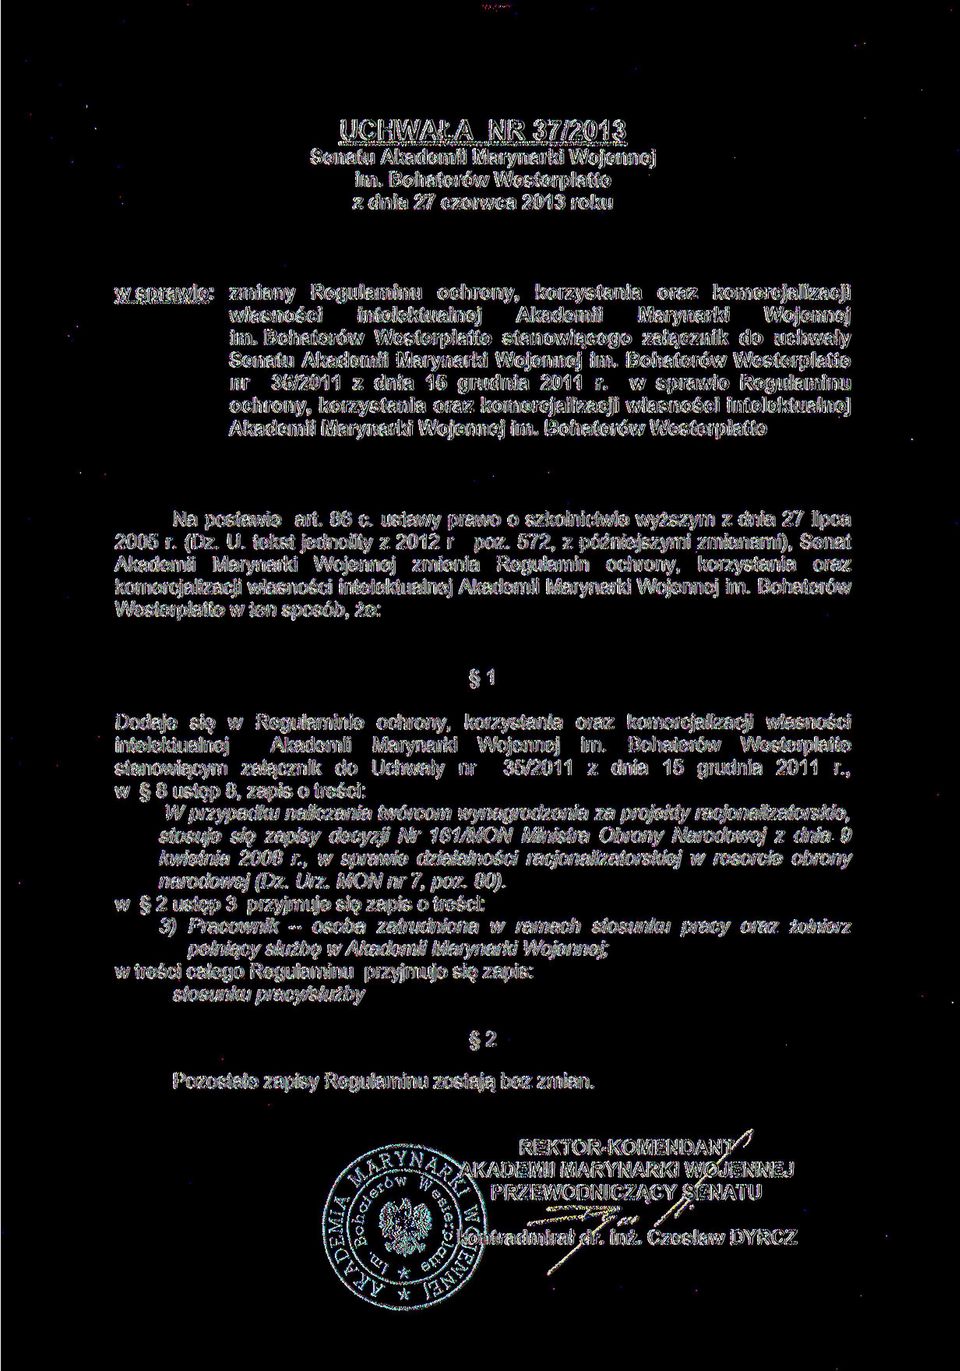 Bohaterów Westerplatte stanowiącego załącznik do uchwały Senatu Akademii Marynarki Wojennej im. Bohaterów Westerplatte nr 35/2011 z dnia 15 grudnia 2011 r.